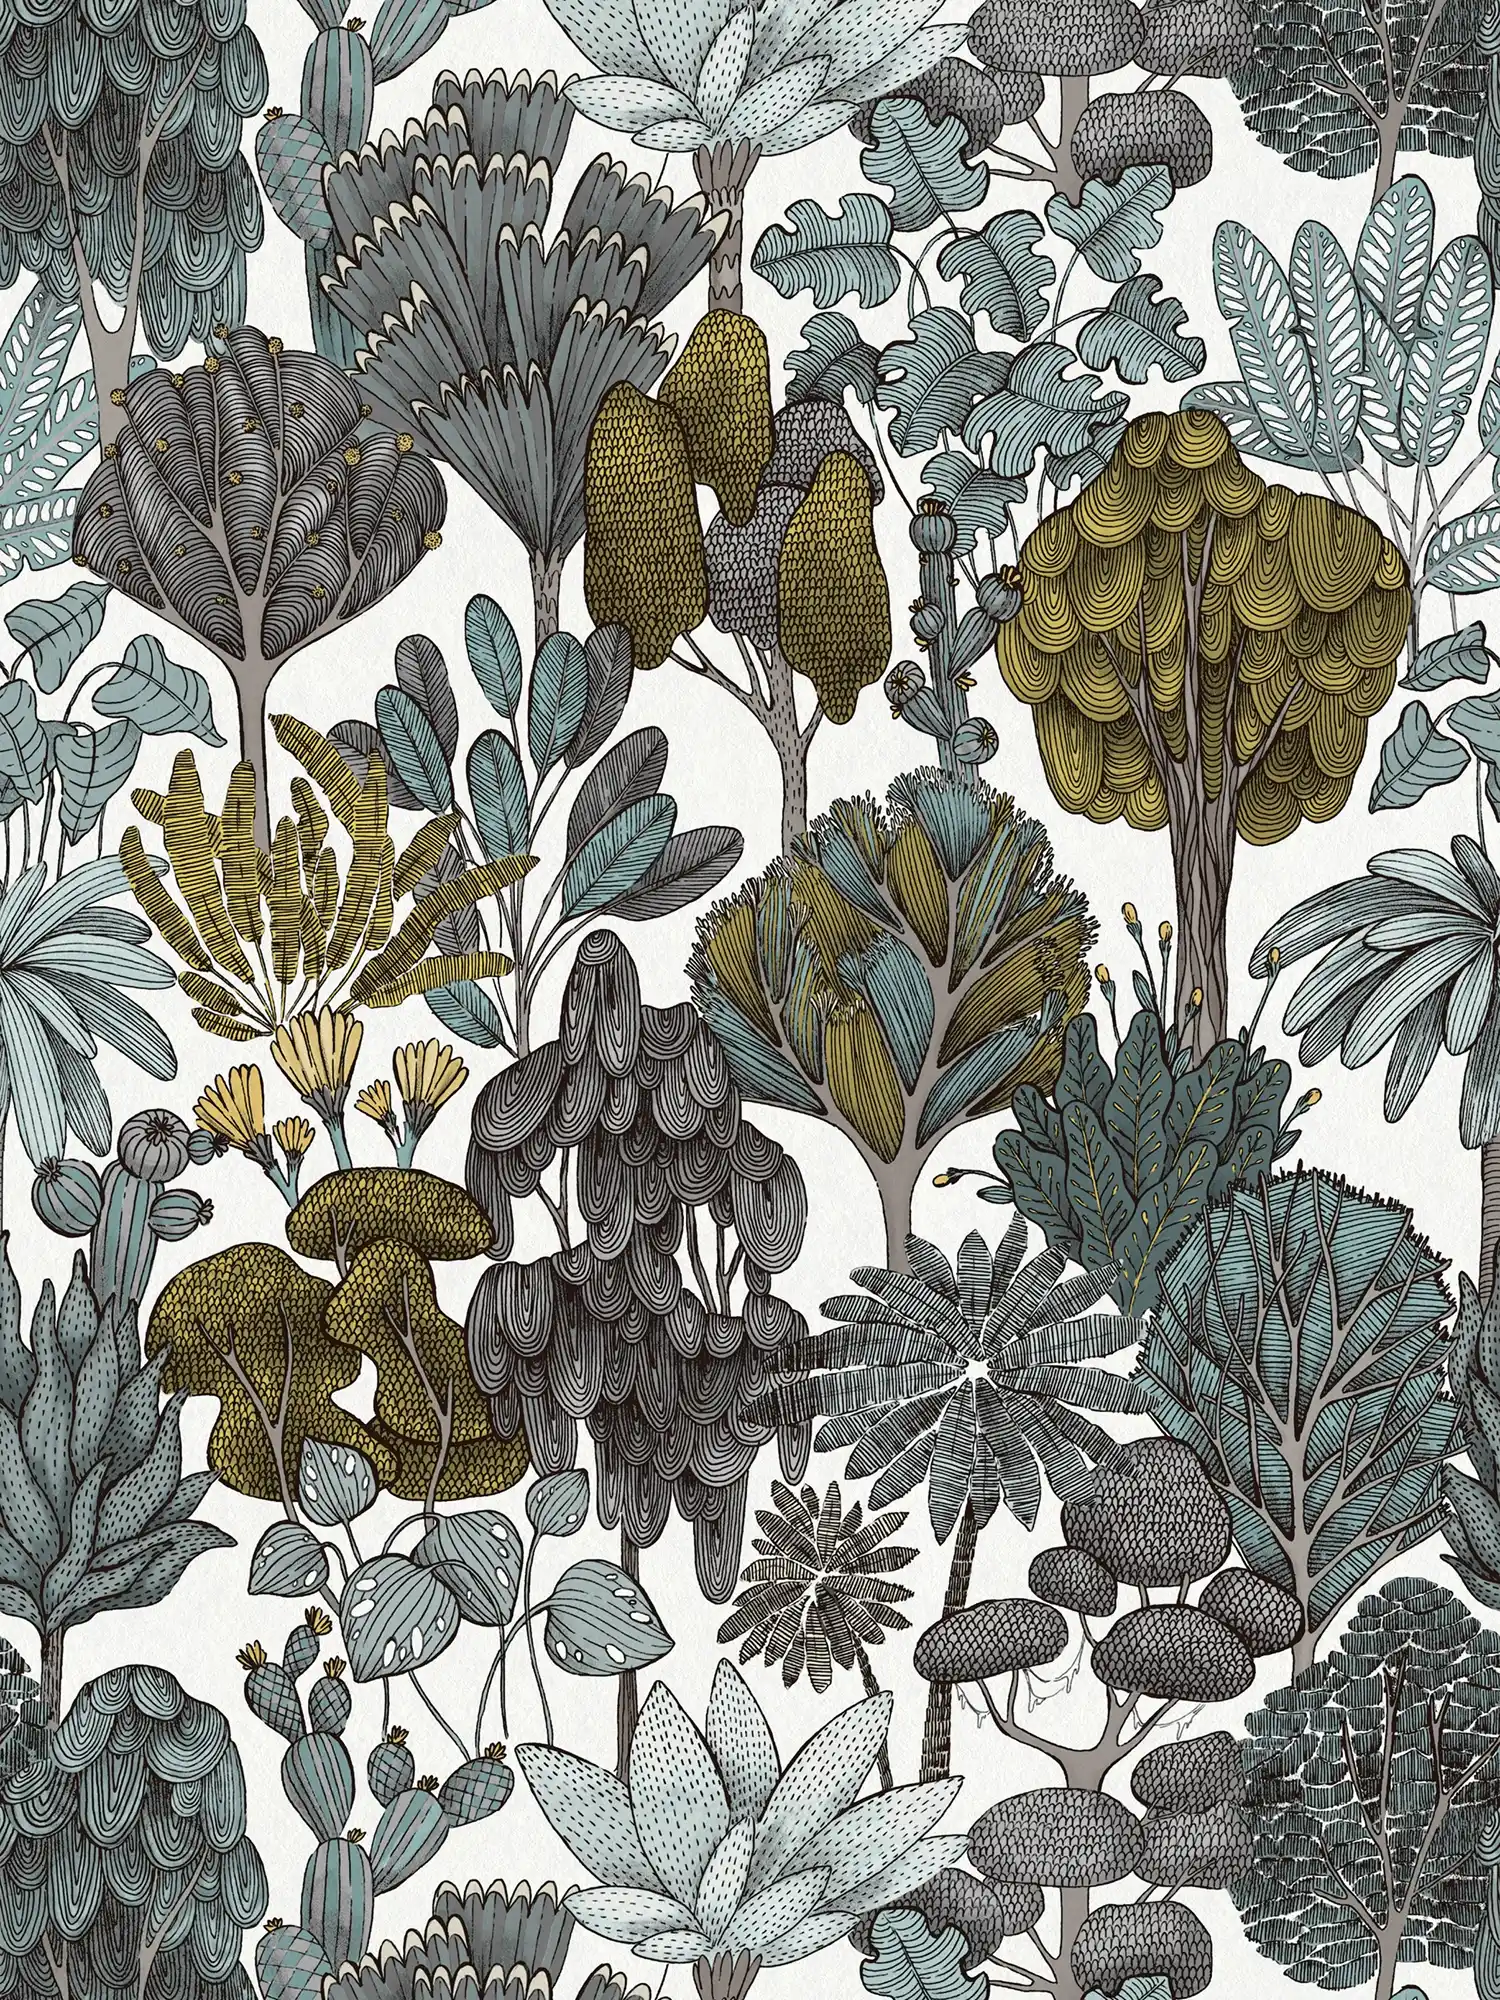 behang groen grijs bloemenpatroon doodle stijl - groen, grijs, geel
